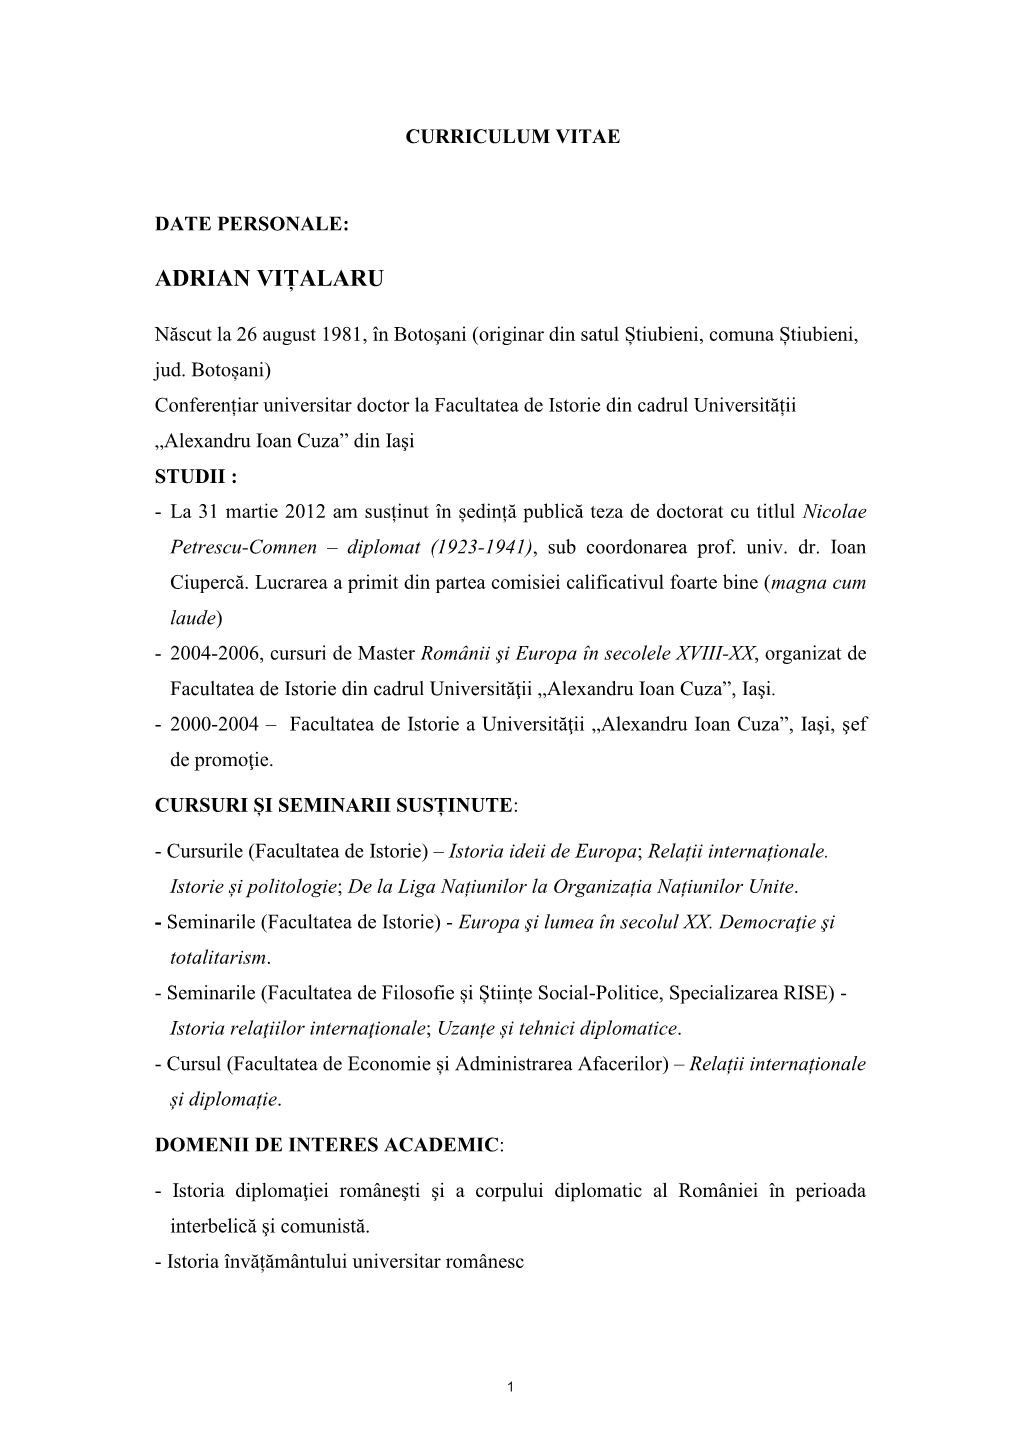 CV Adrian Vițalaru